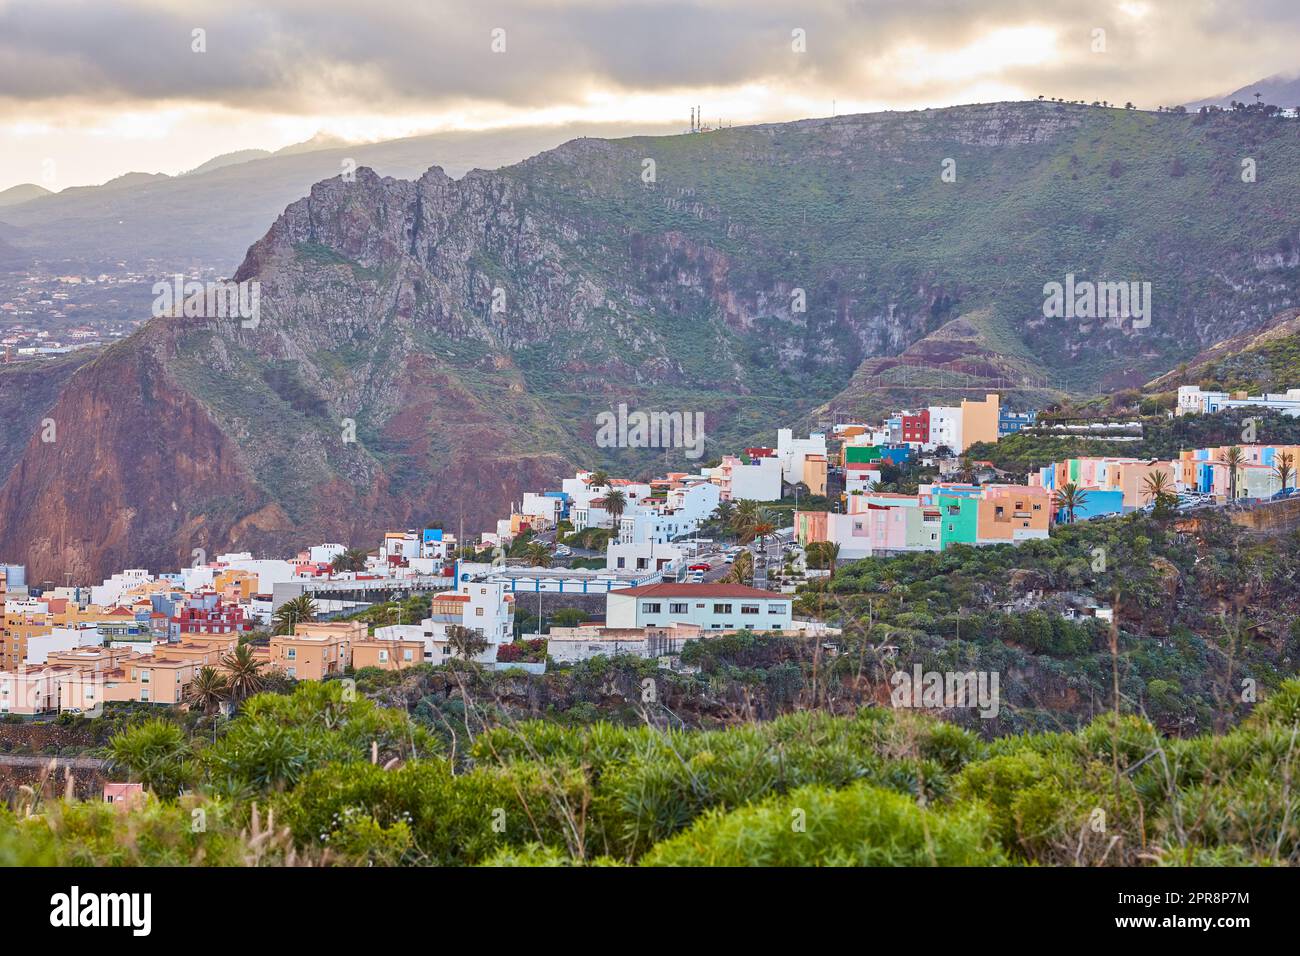 Historische spanische oder koloniale Architektur in einem tropischen Dorf im Touristenziel. Stadt- und Bergblick auf Wohnhäuser oder Gebäude im ruhigen Hügeltal in Santa Cruz, La Palma, Spanien. Stockfoto